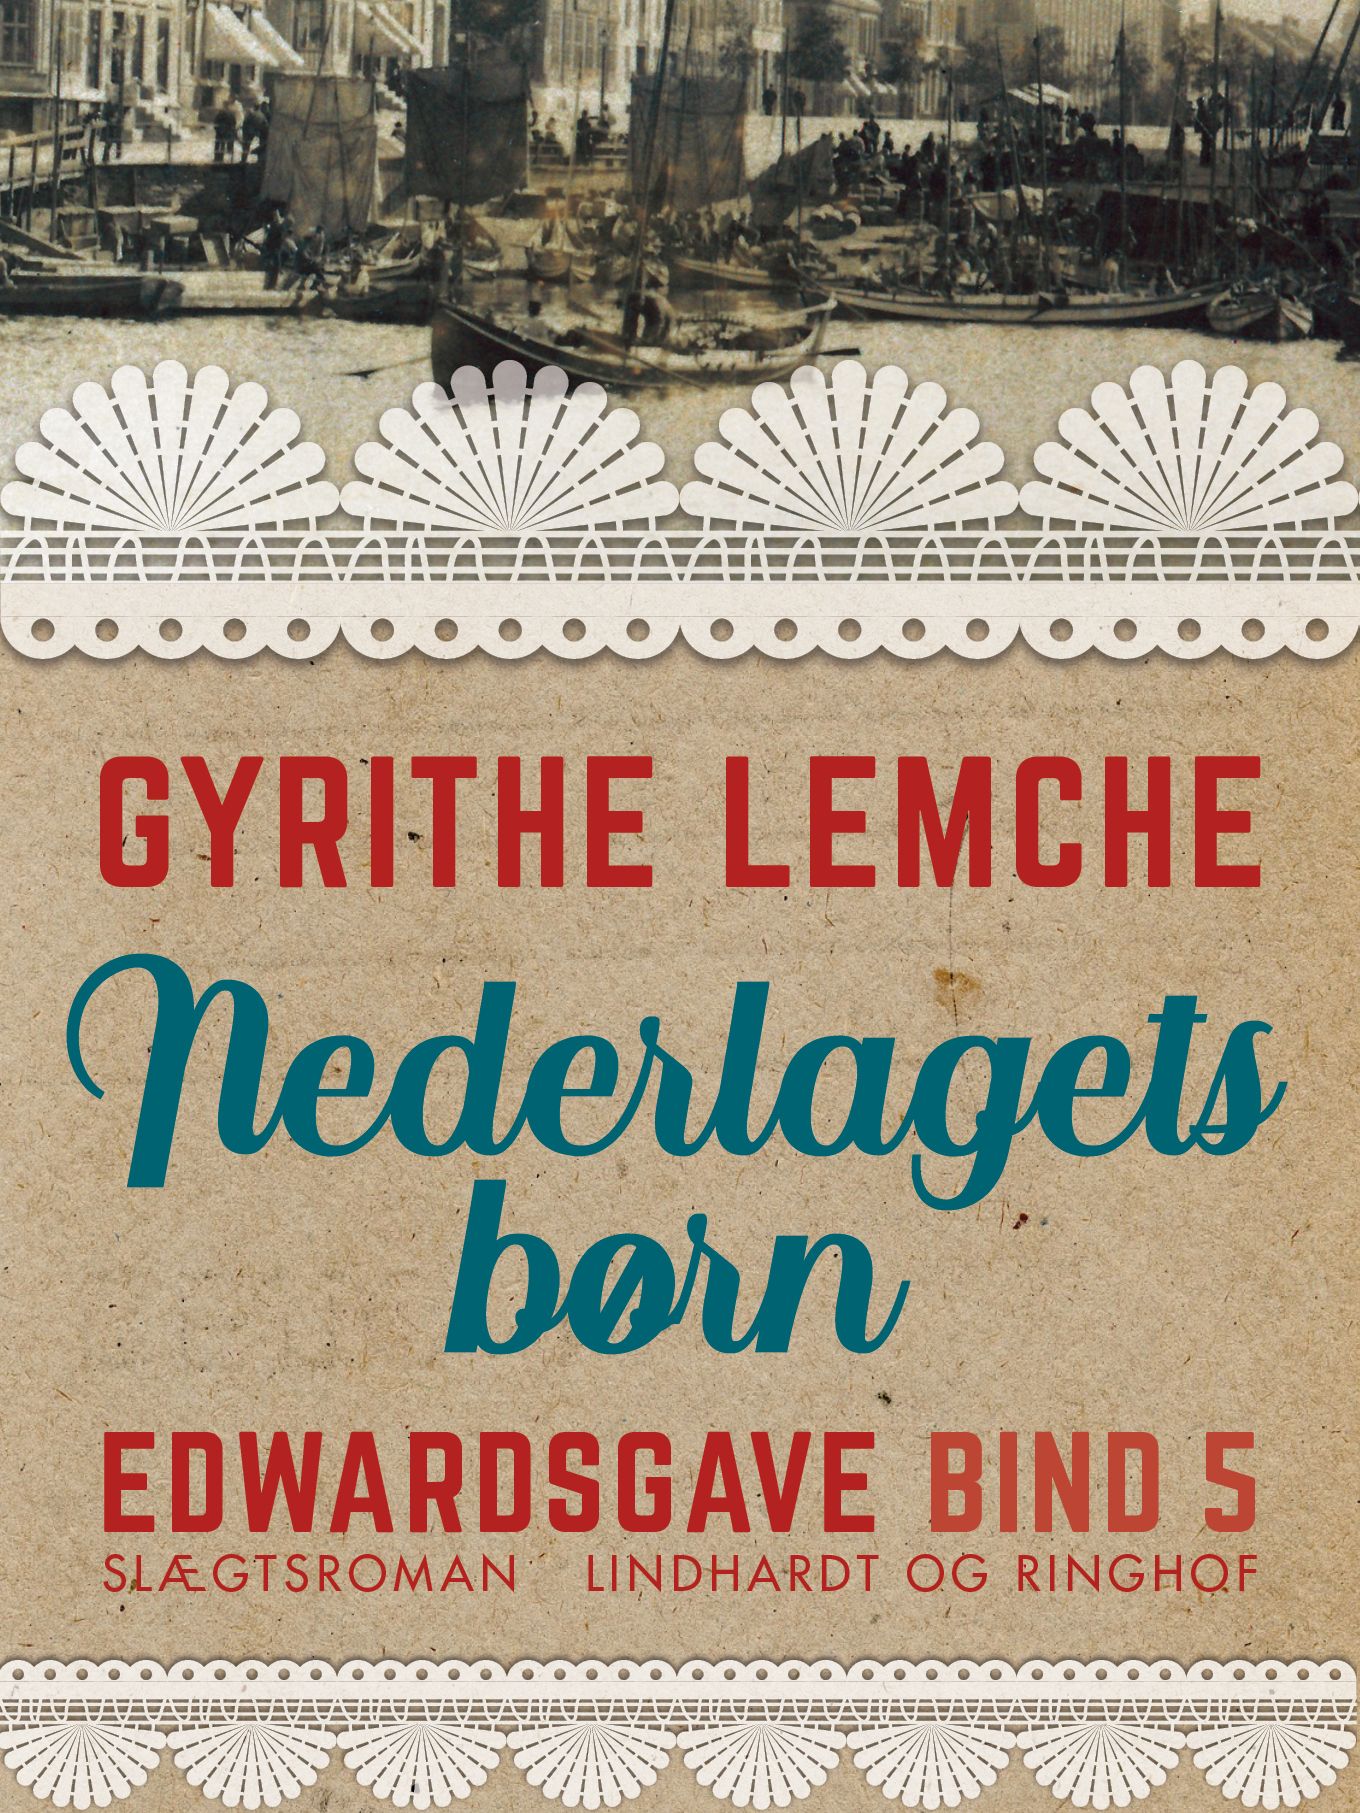 Edwardsgave - Nederlagets børn, e-bog af Gyrithe Lemche